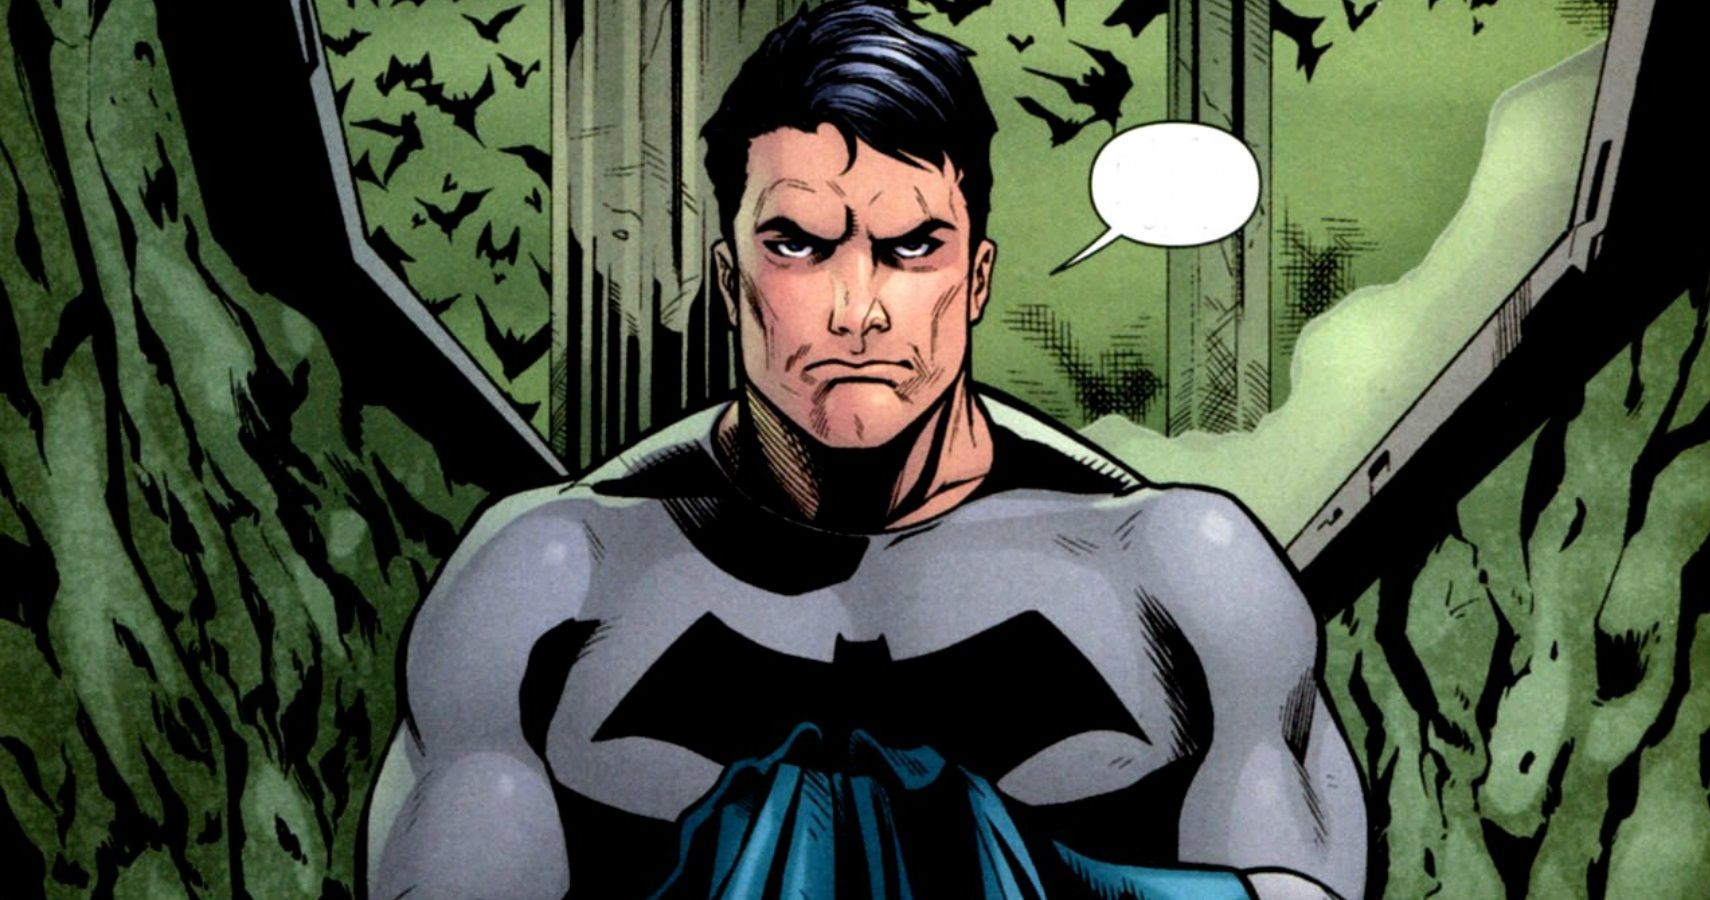 Batman The 10 Most Hilarious Bruce Wayne Memes